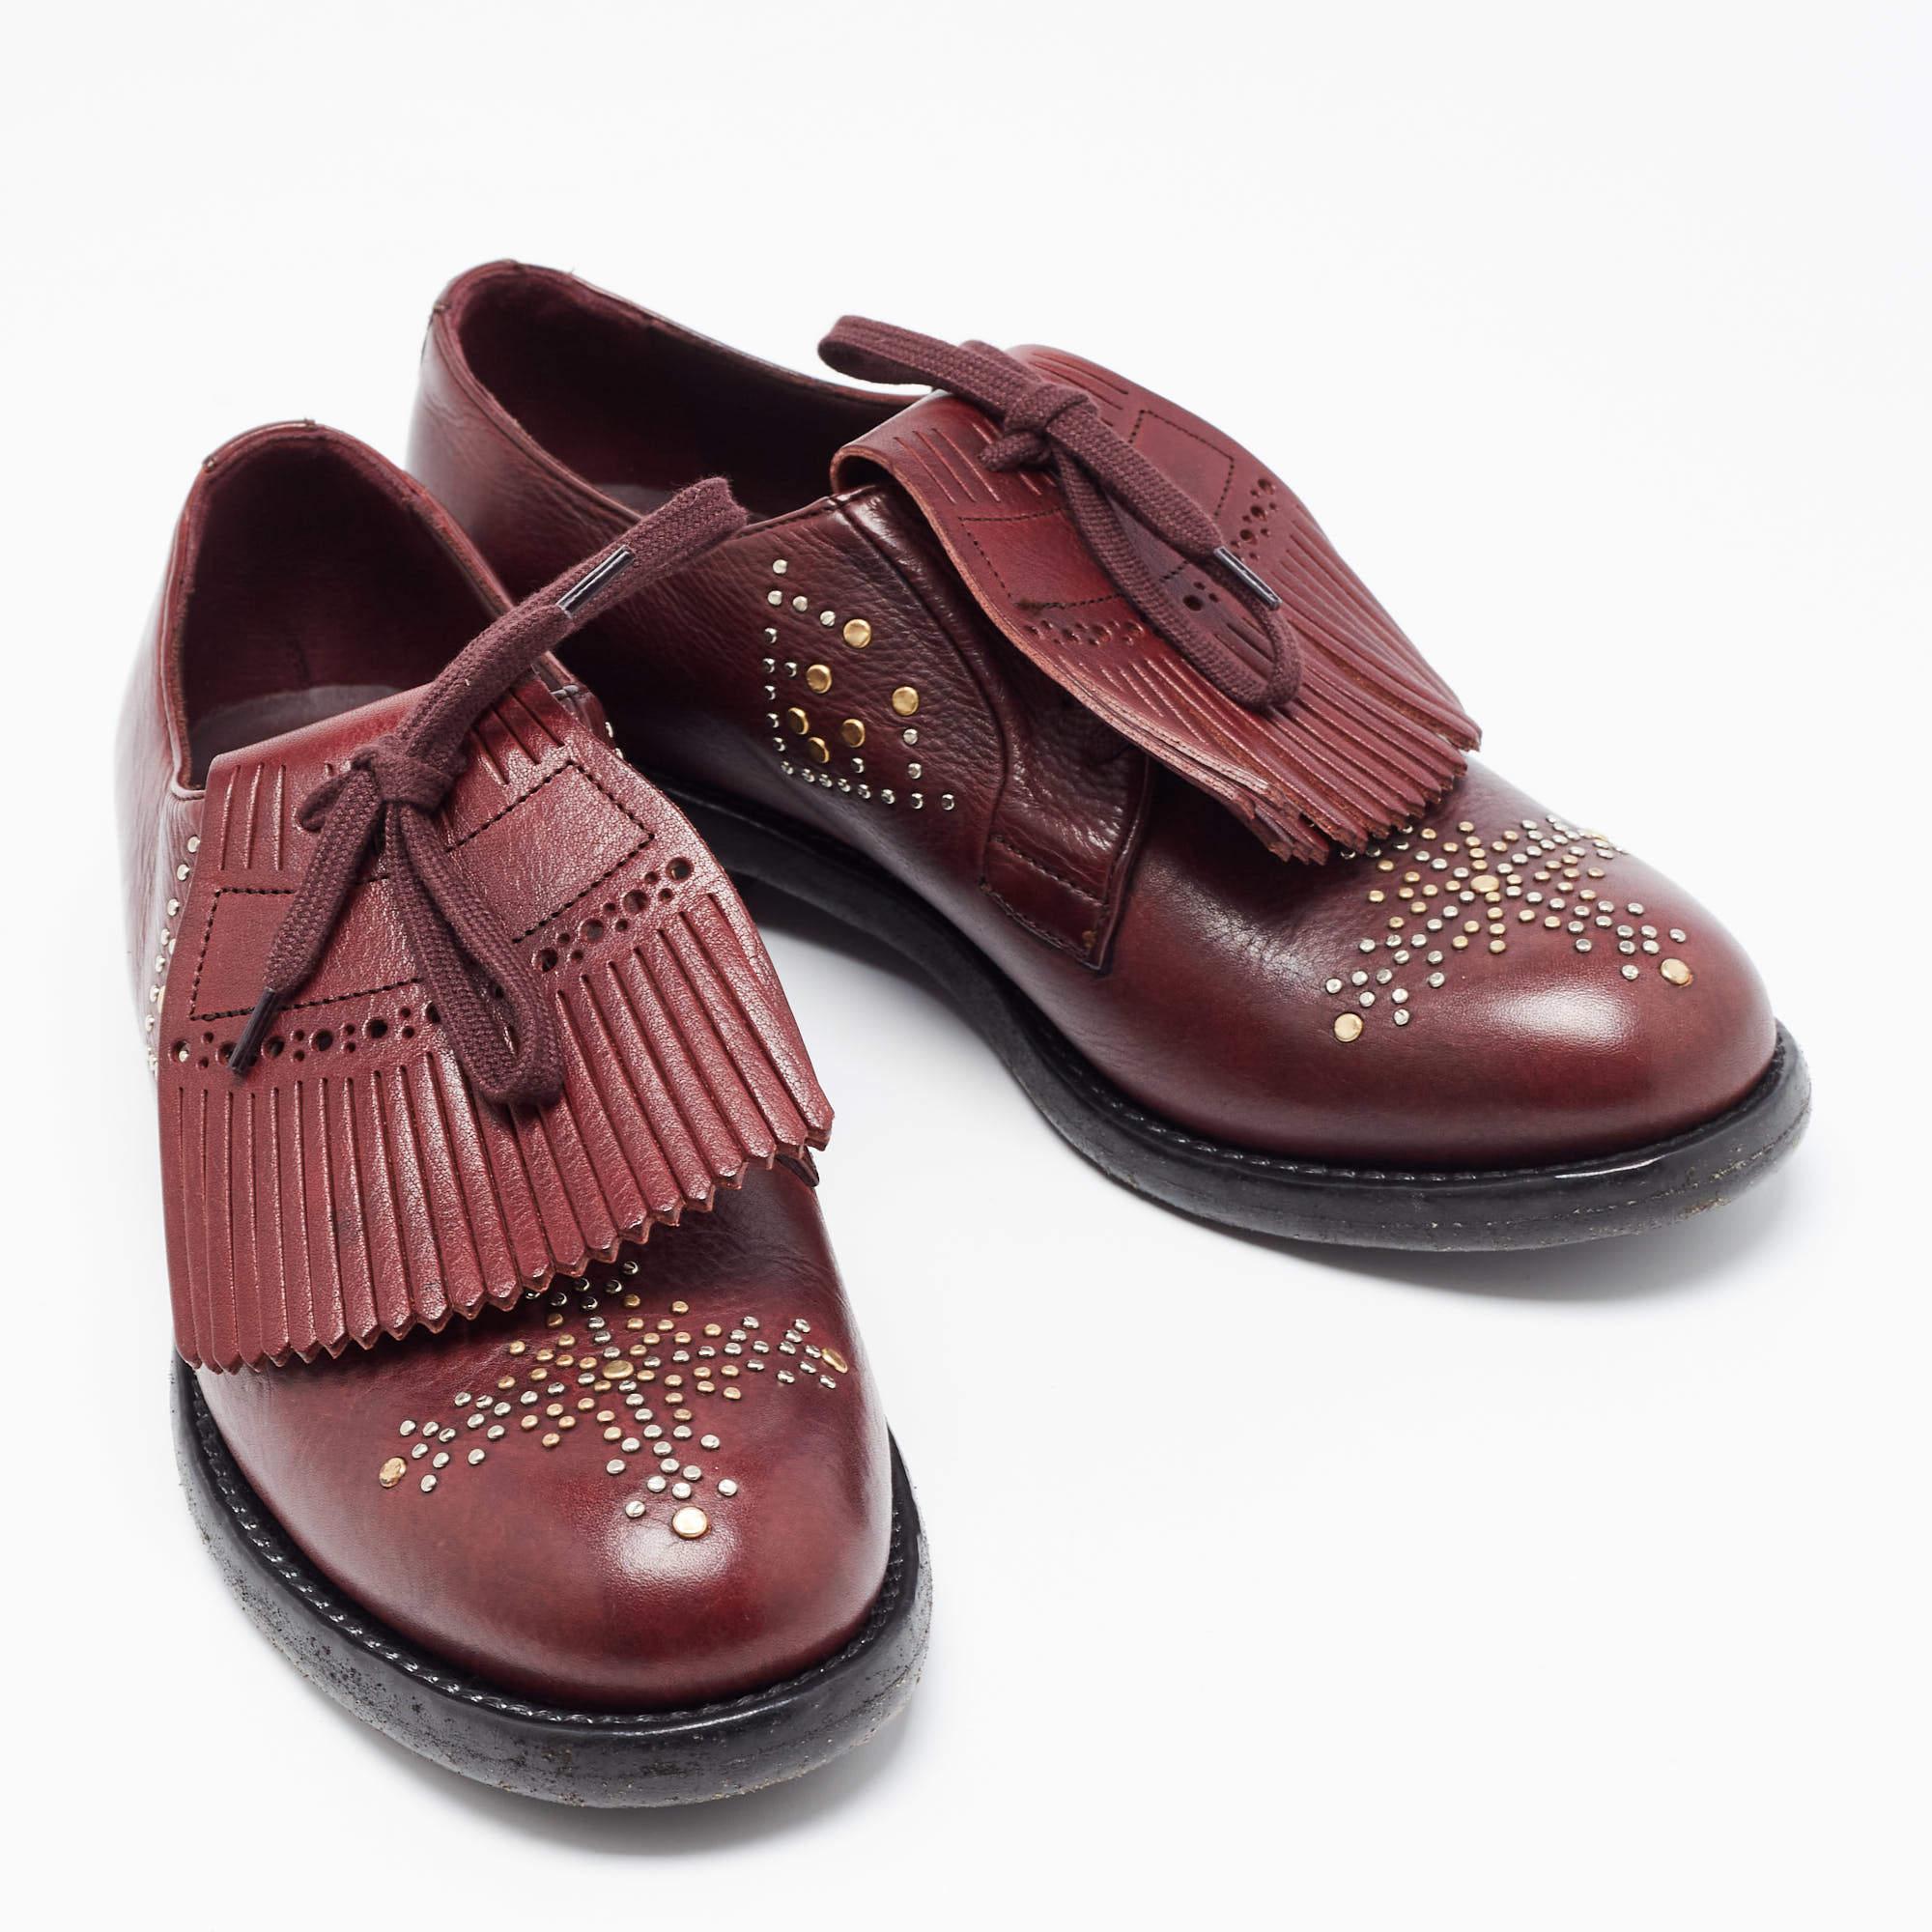 Diese Oxfords von Burberry sind aus feinstem MATERIAL gefertigt und zeichnen sich durch einen eleganten Look, robuste Sohlen und Schnürungen an den Vamps aus. Kombinieren Sie diese Schuhe mit einer maßgeschneiderten Hose und einem Blazer für einen